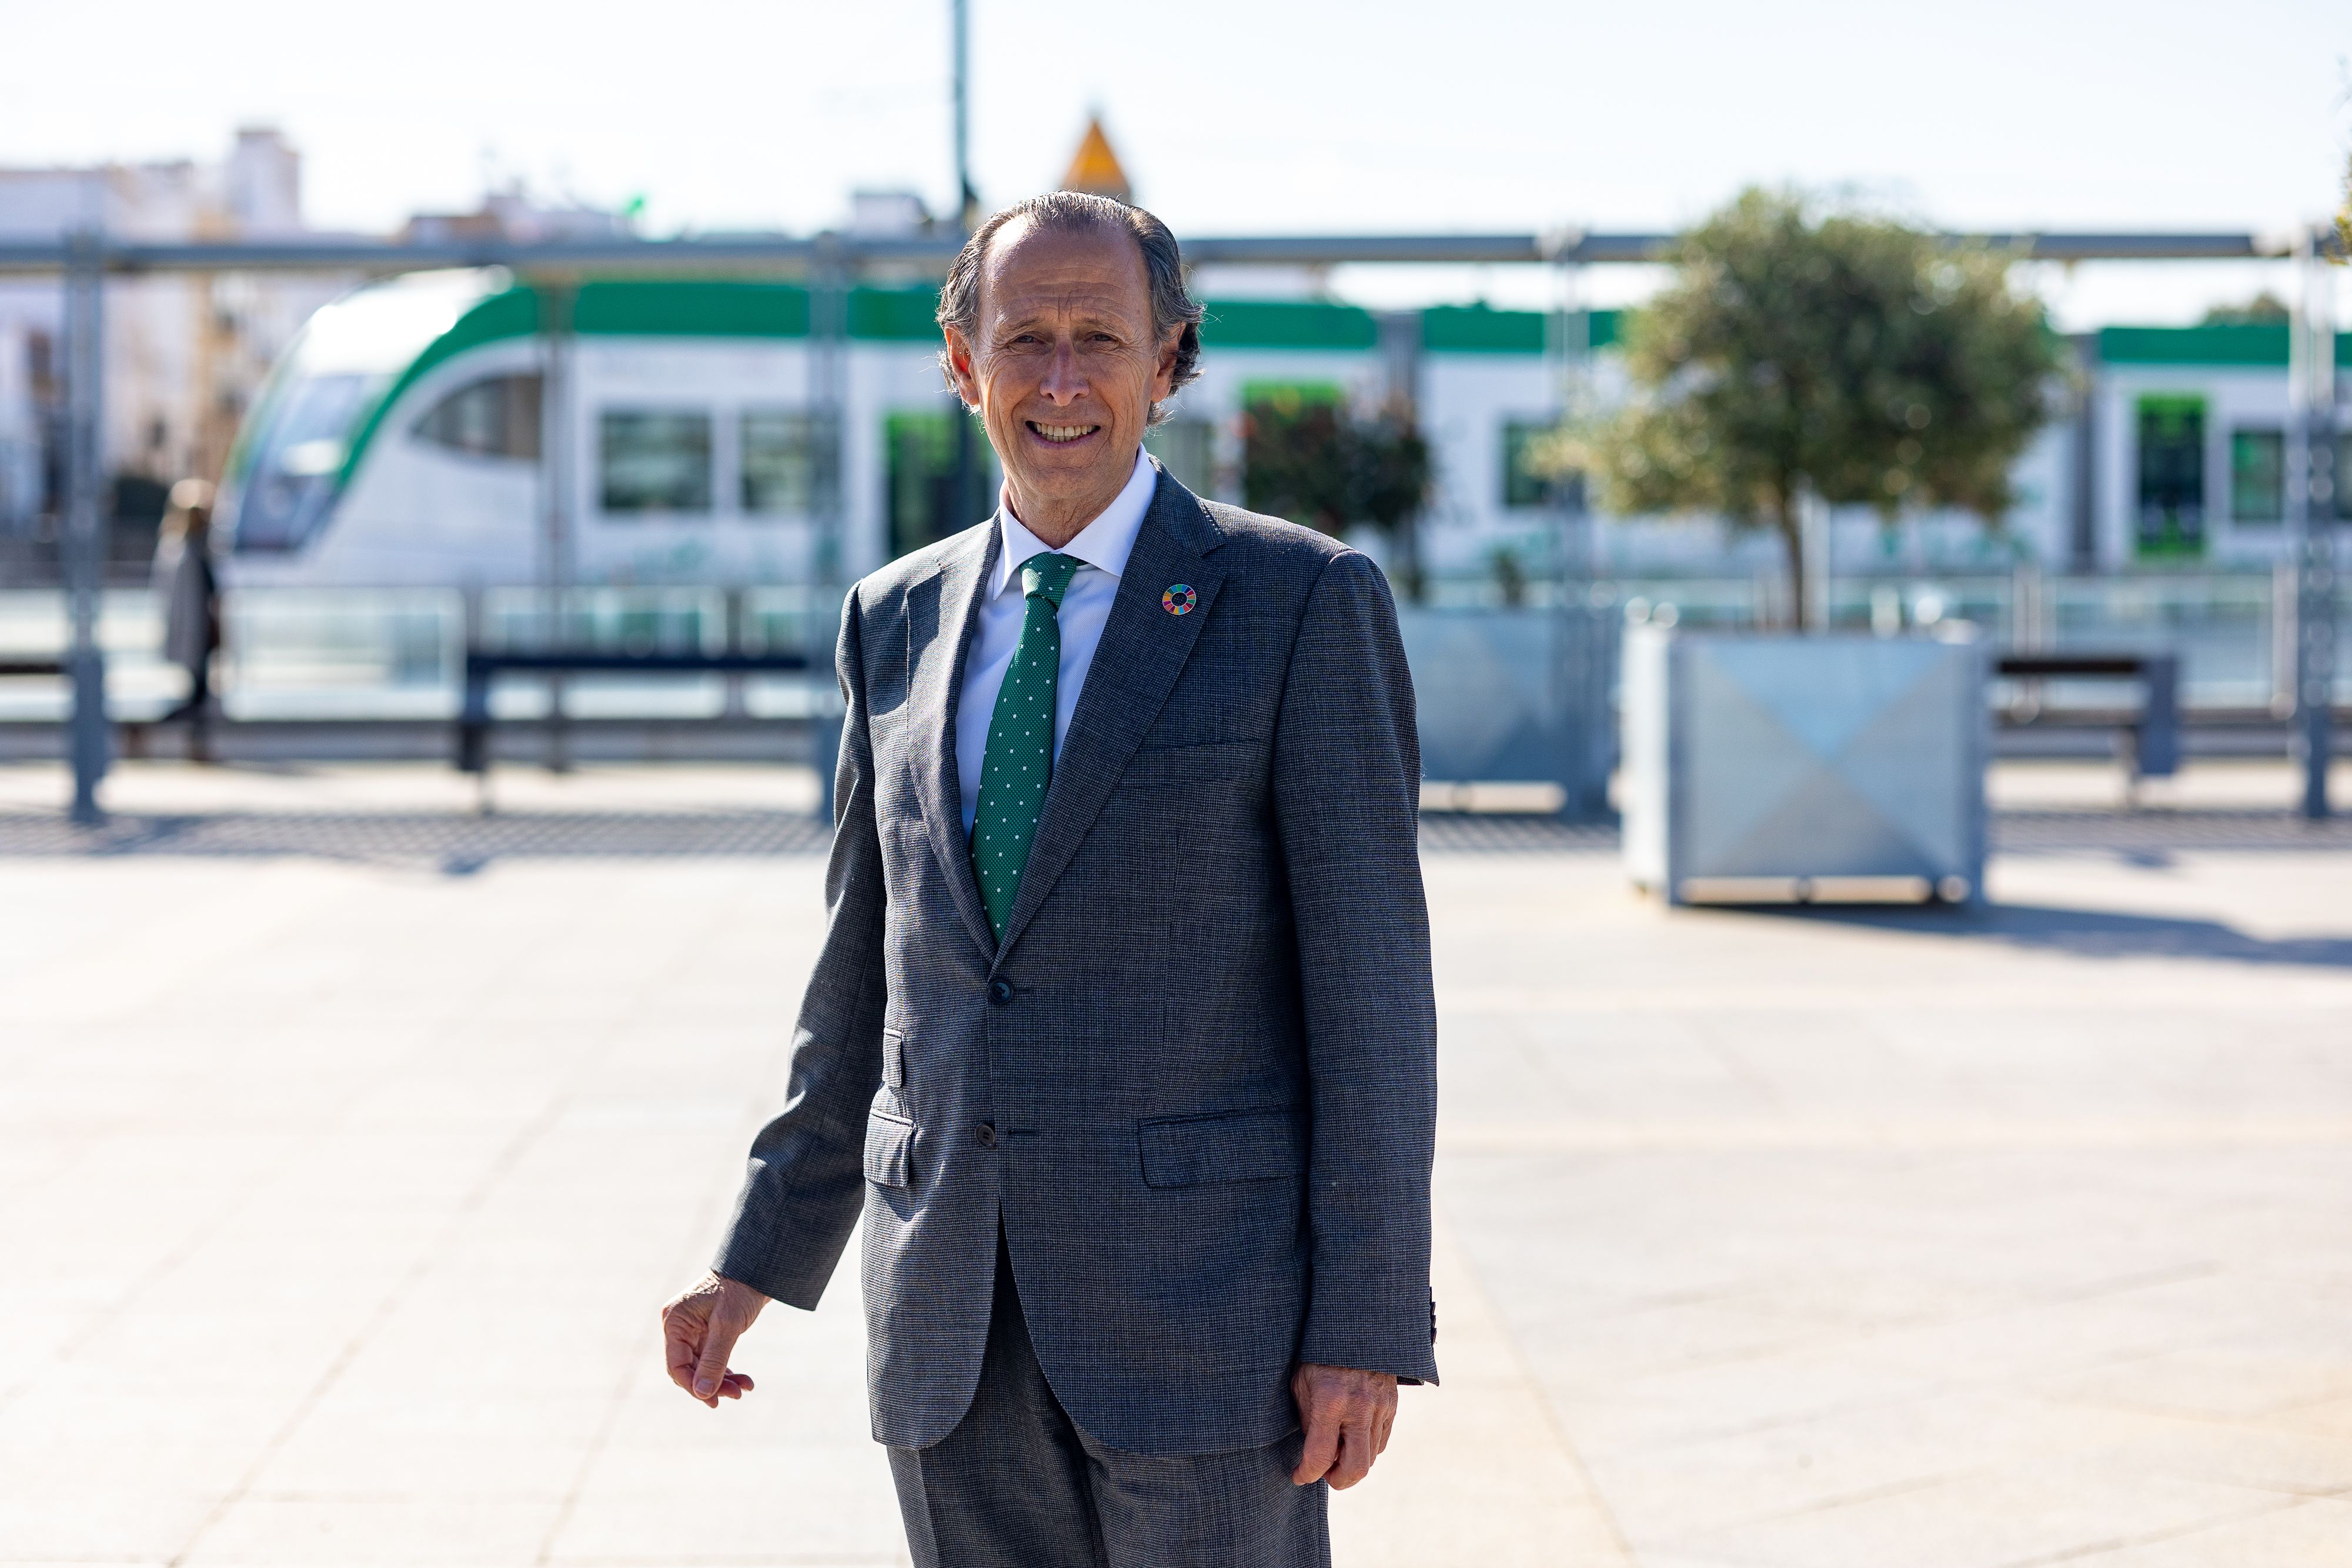 José María Román, alcalde de Chiclana, tras la entrevista con lavozdelsur.es y con el tranvía de la Bahía de Cádiz circulando en pruebas.